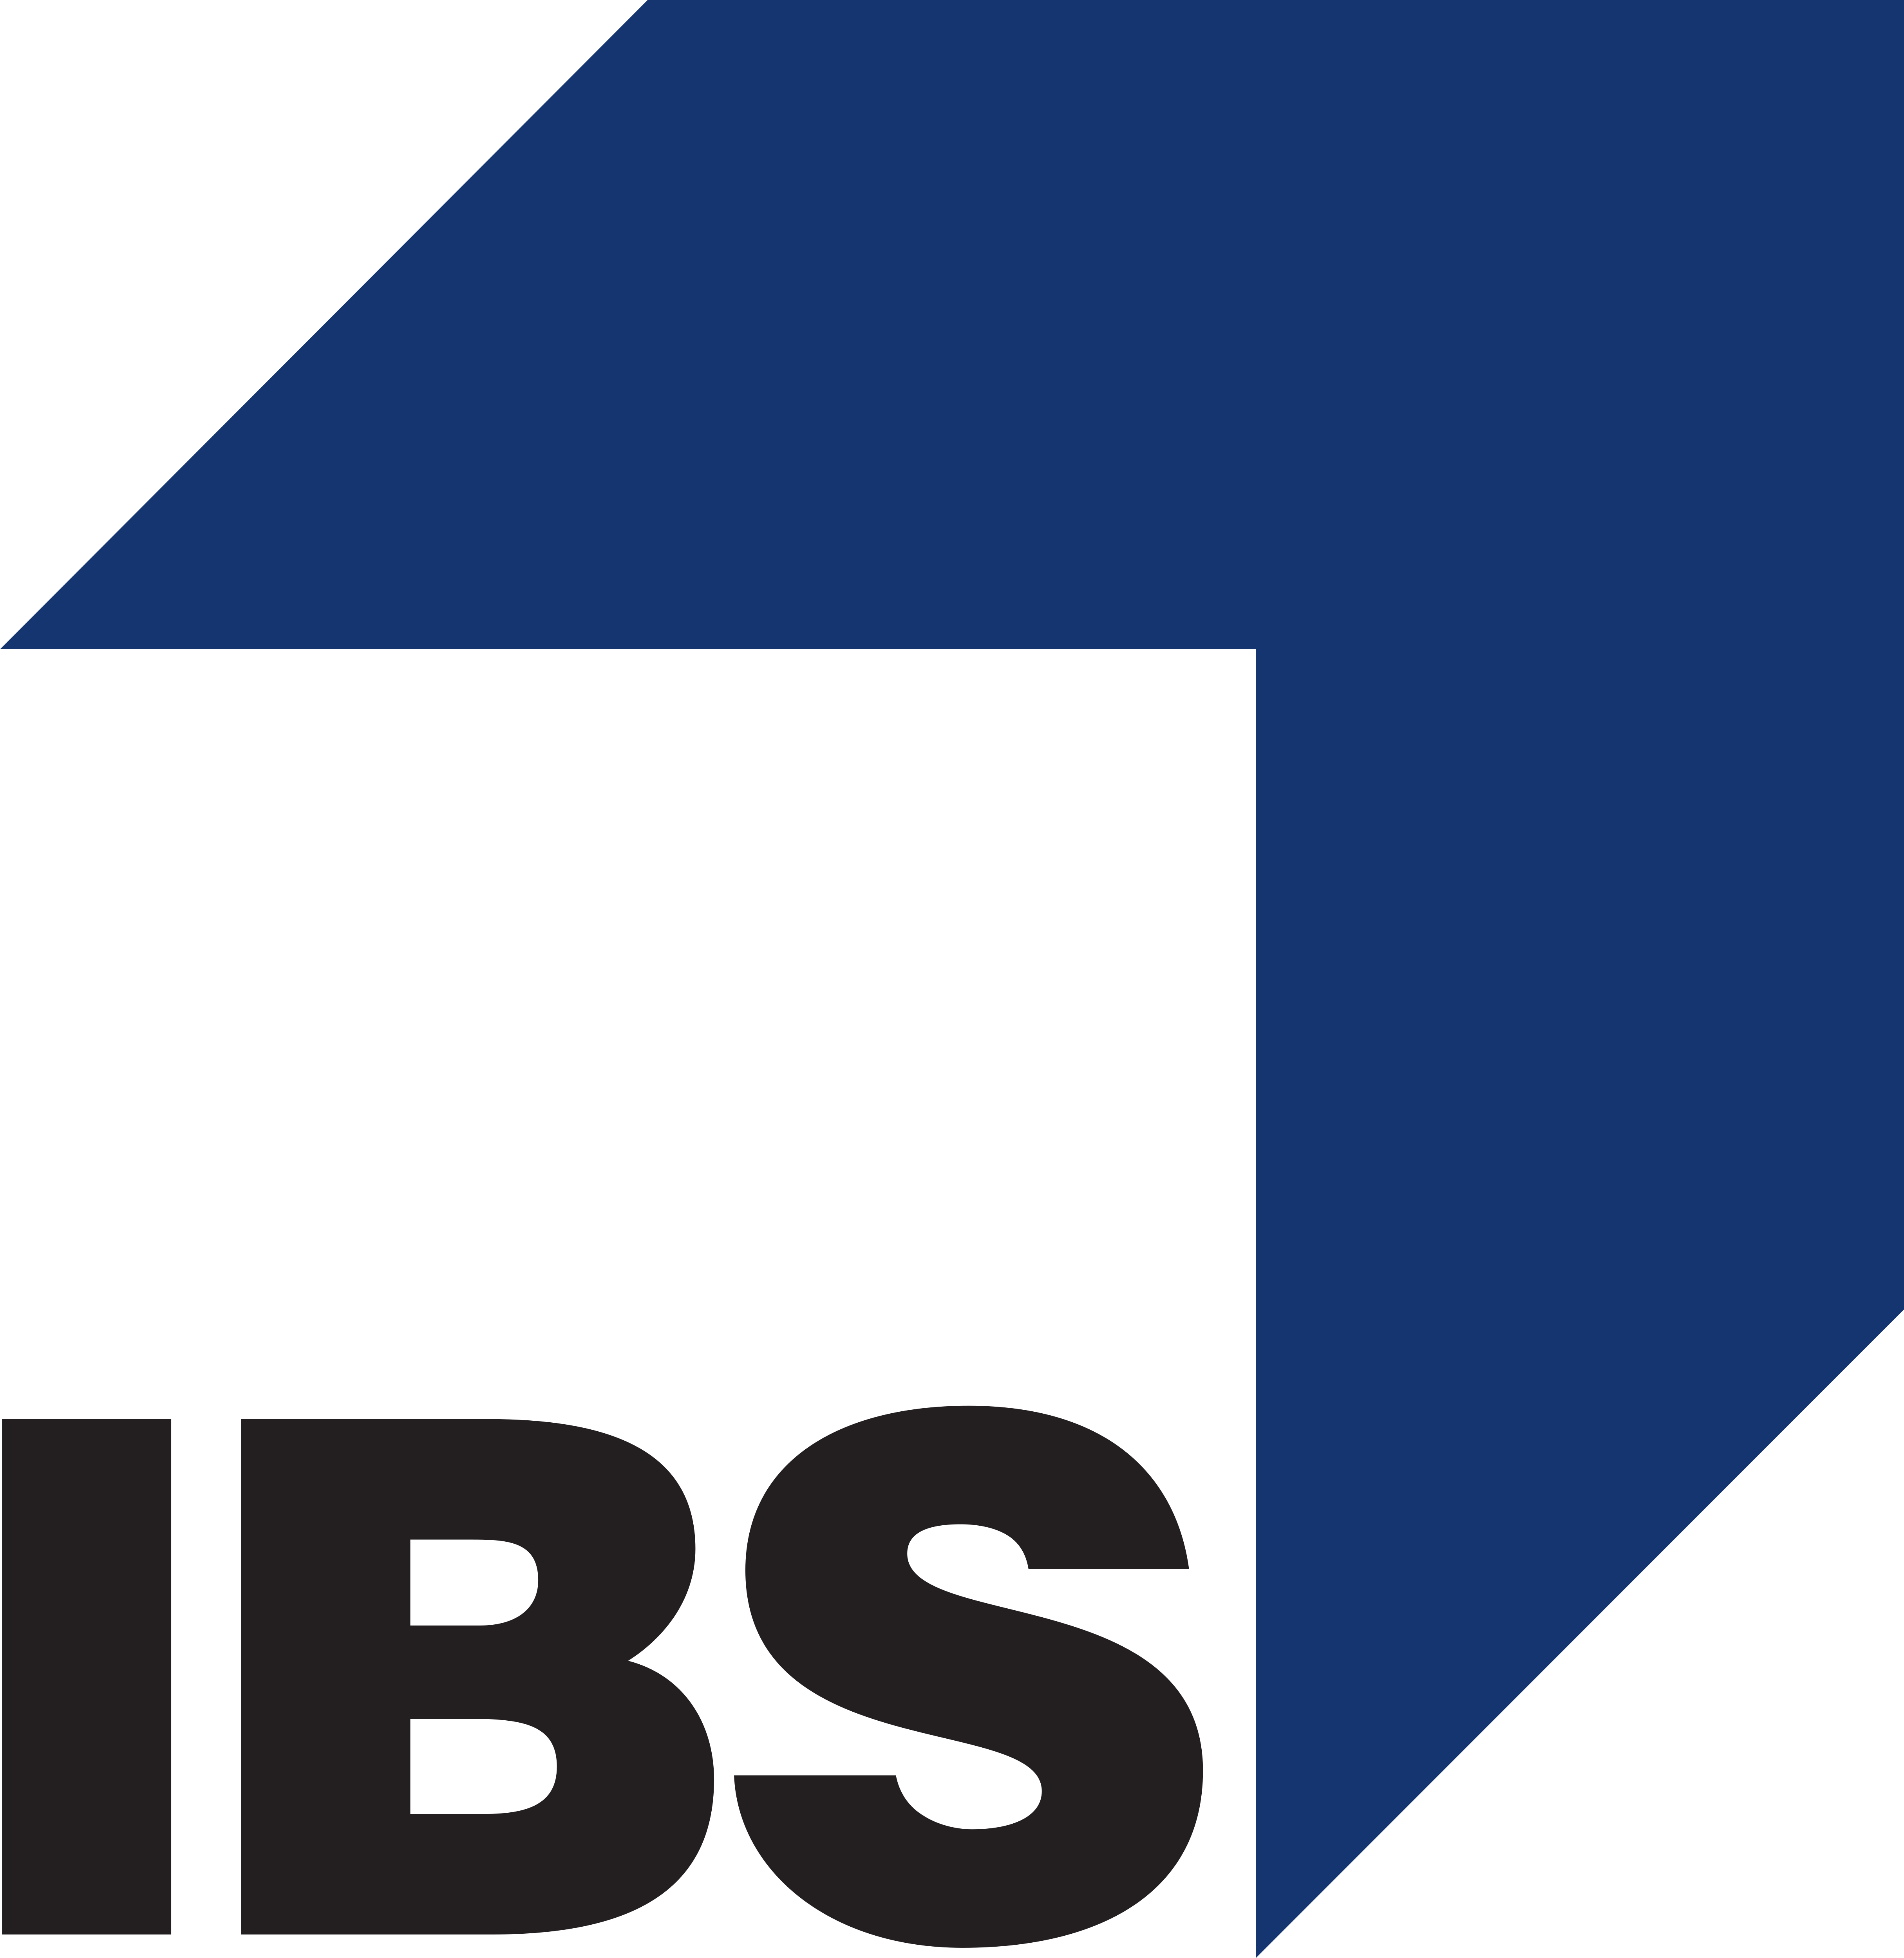 IBS компания. IBS лого. IBS Platformix логотип. IBS компания Нижний Новгород.